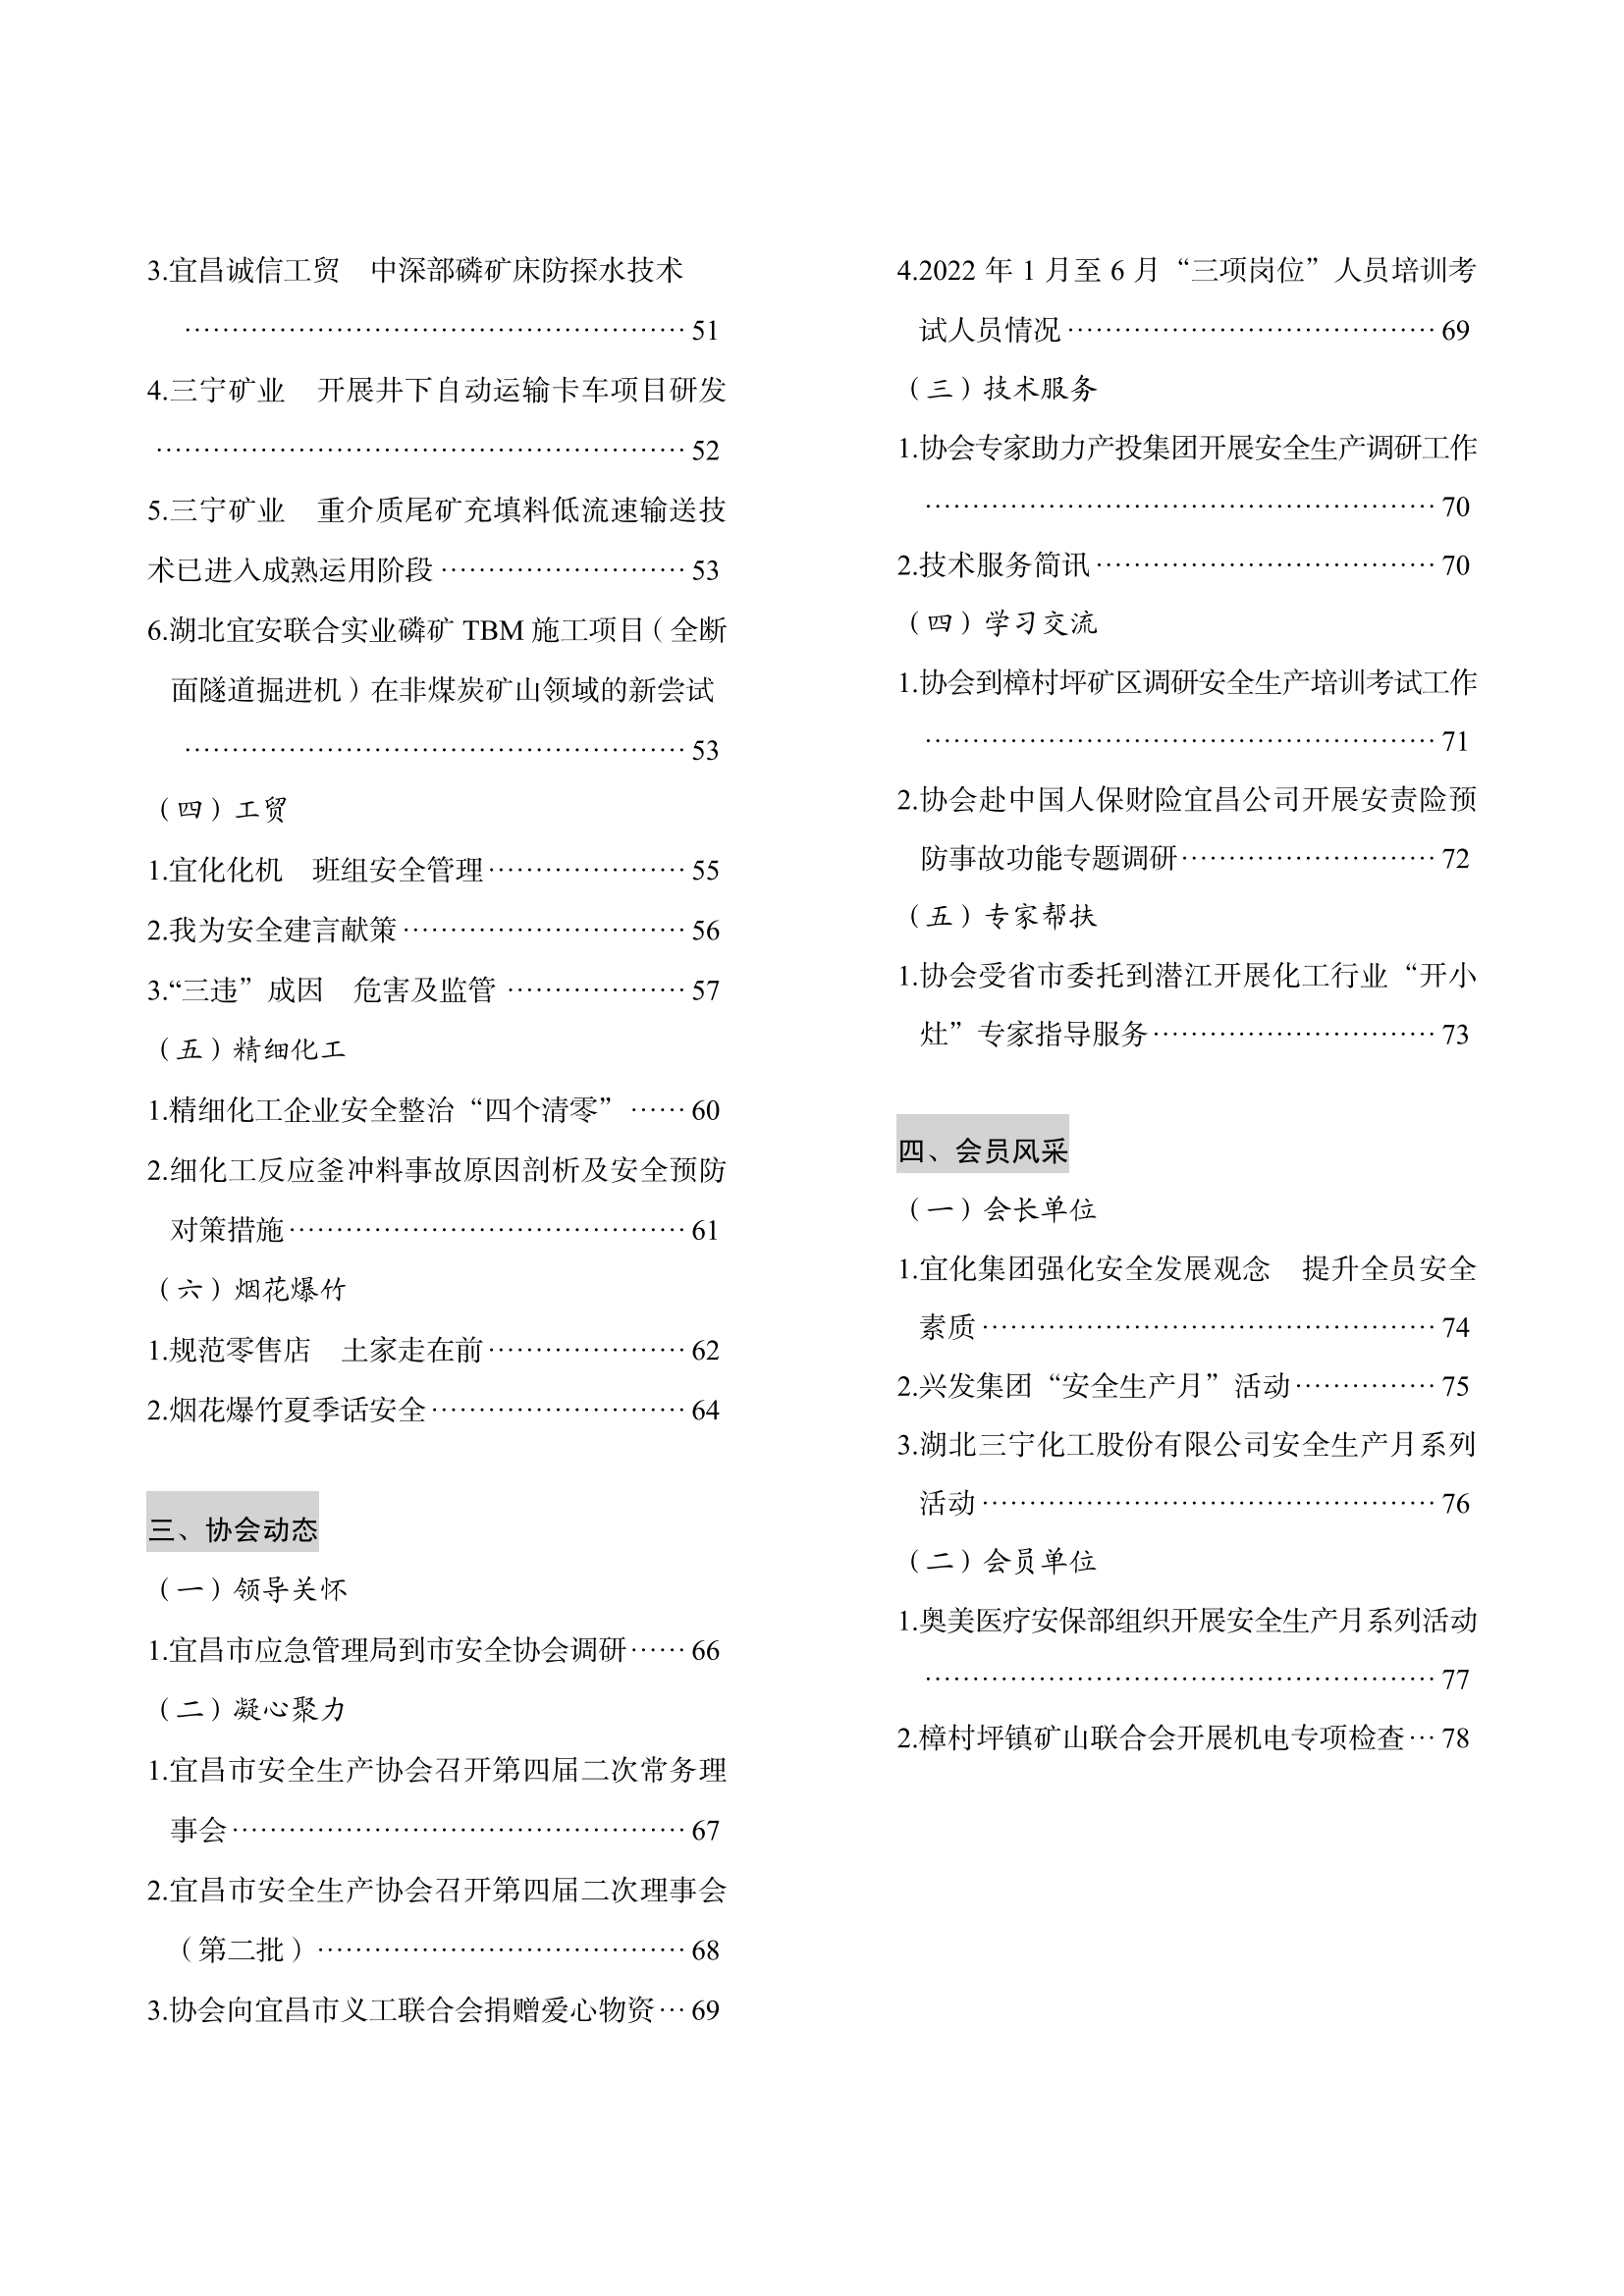 宜昌安全生产期刊第一期_05.png